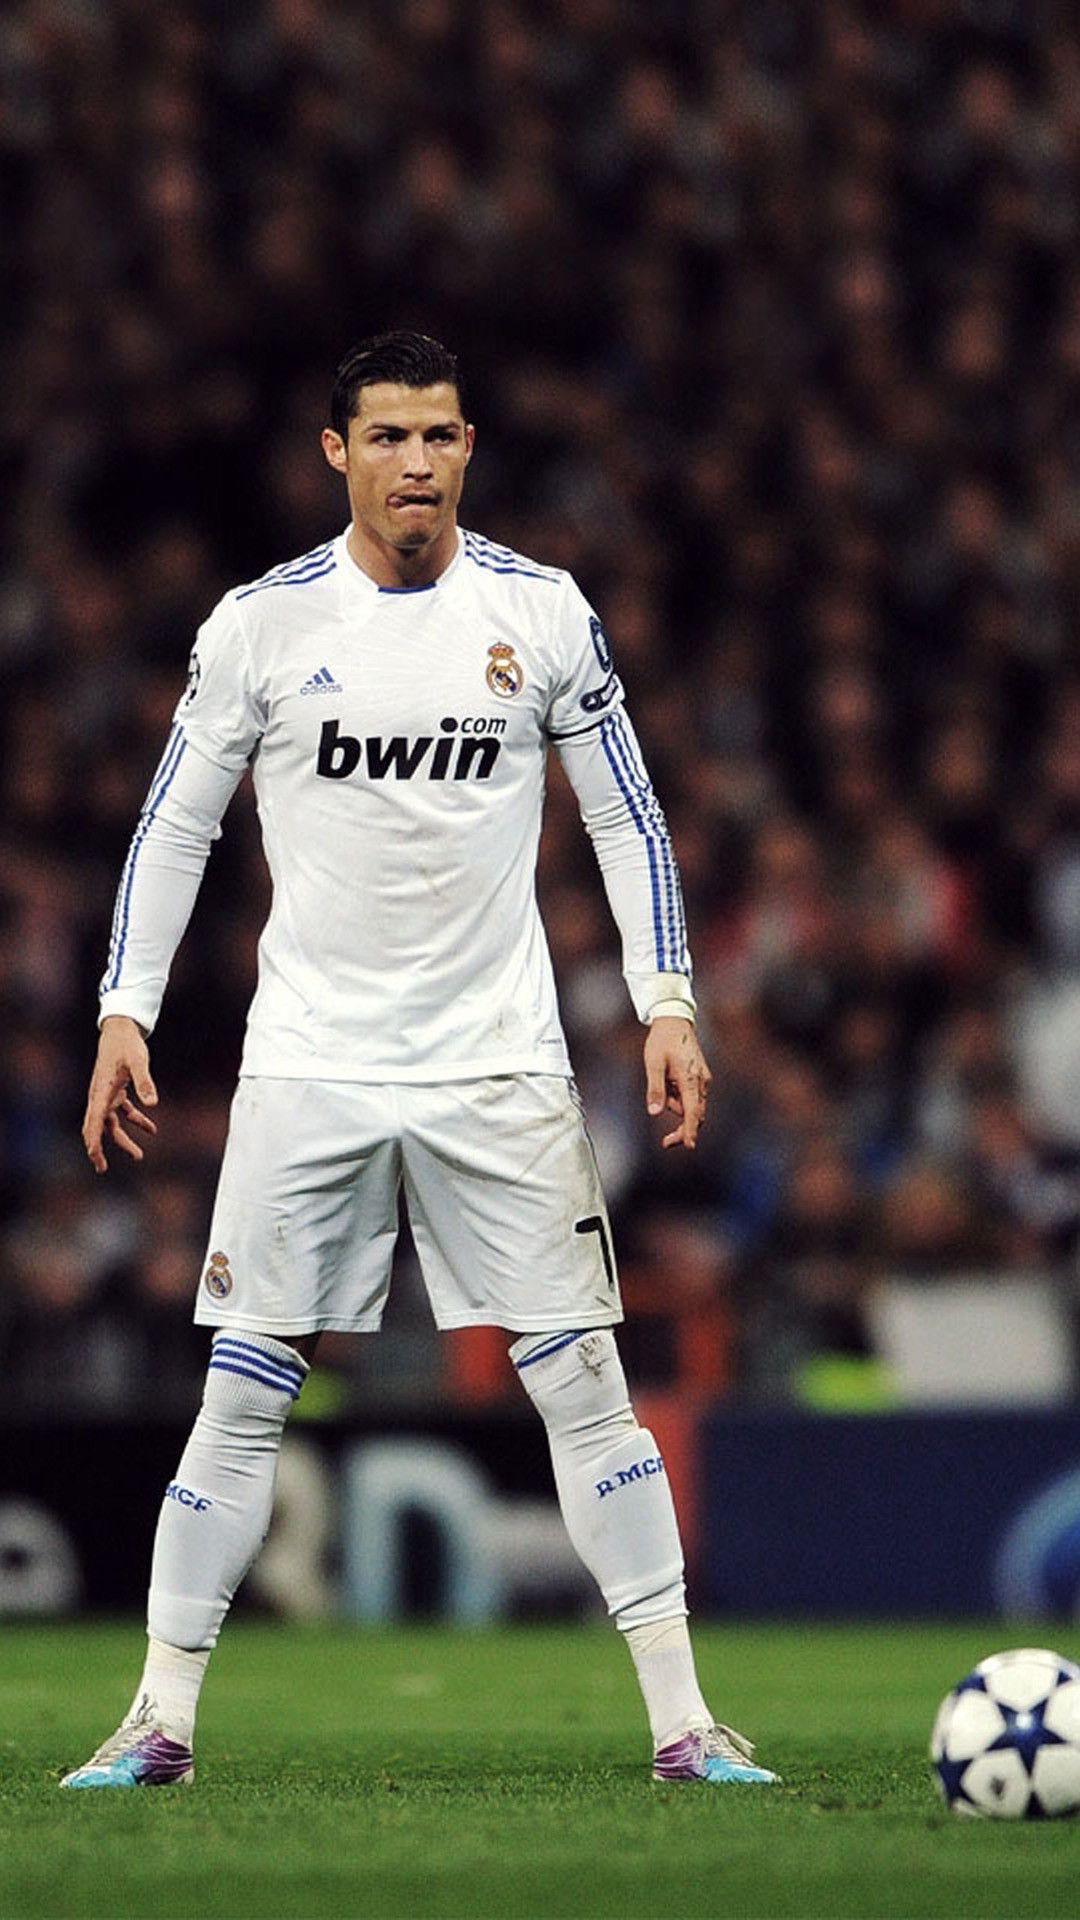 Más de 60 fondos de pantalla de Cristiano Ronaldo para iPhone - Descarga